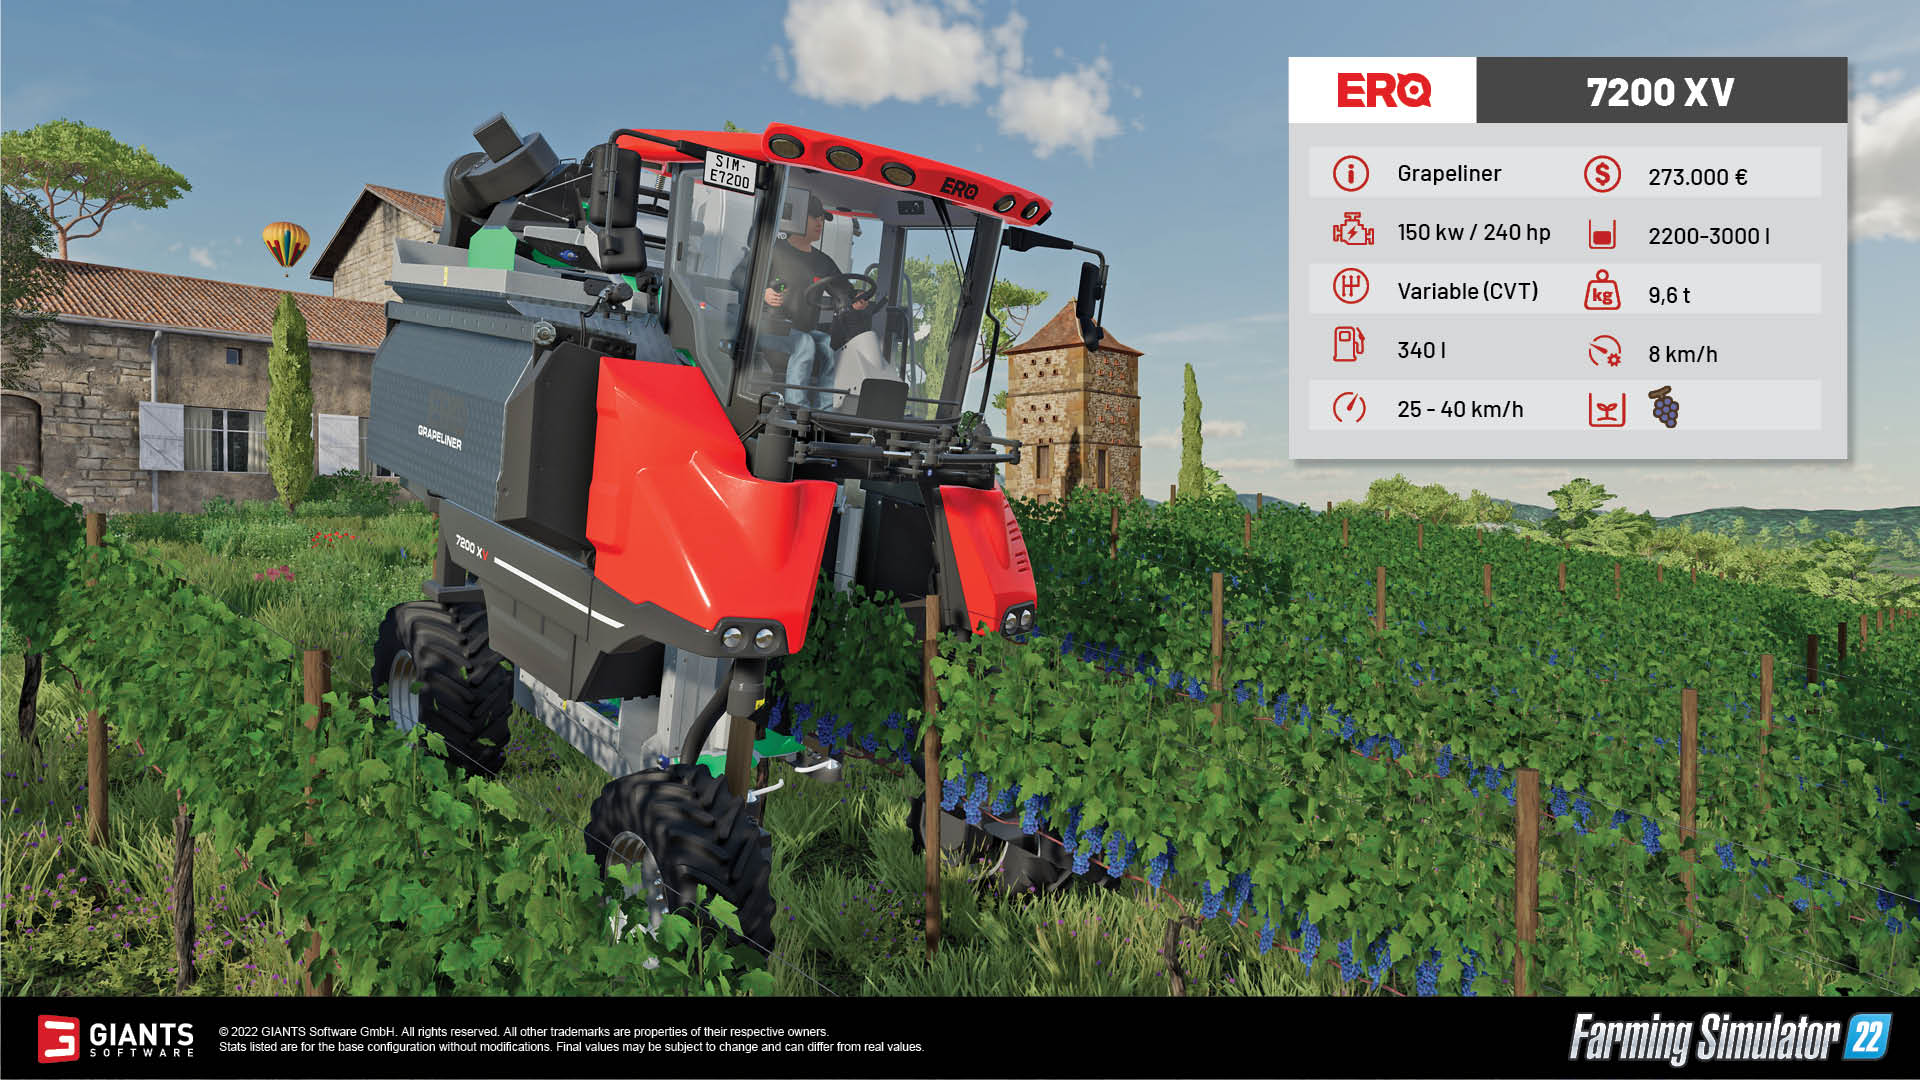 Landwirtschafts-Simulator 22: Neues News DLC Notebookcheck.com ein weiteres geht bald - auf Großgerät, bringt Fans Licht